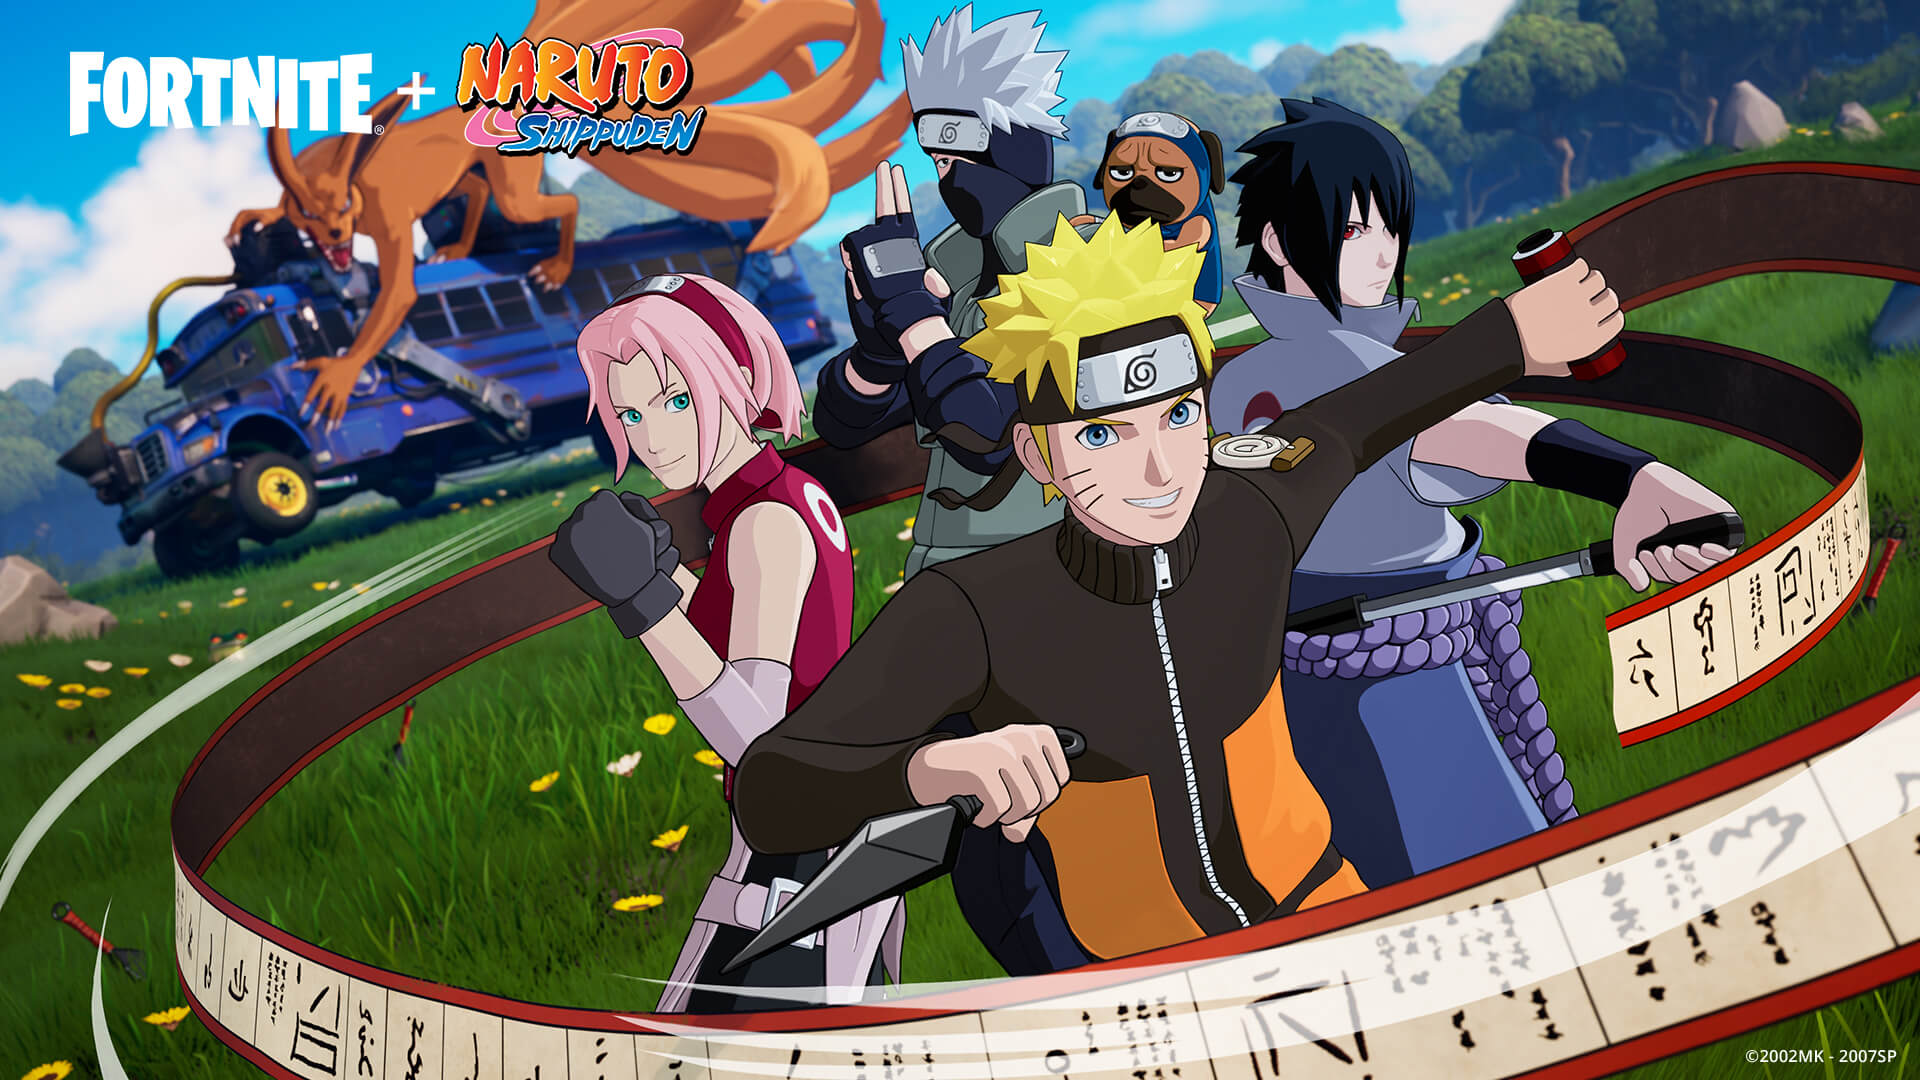 Fã Clube Naruto: Informações dos personagens do Naruto